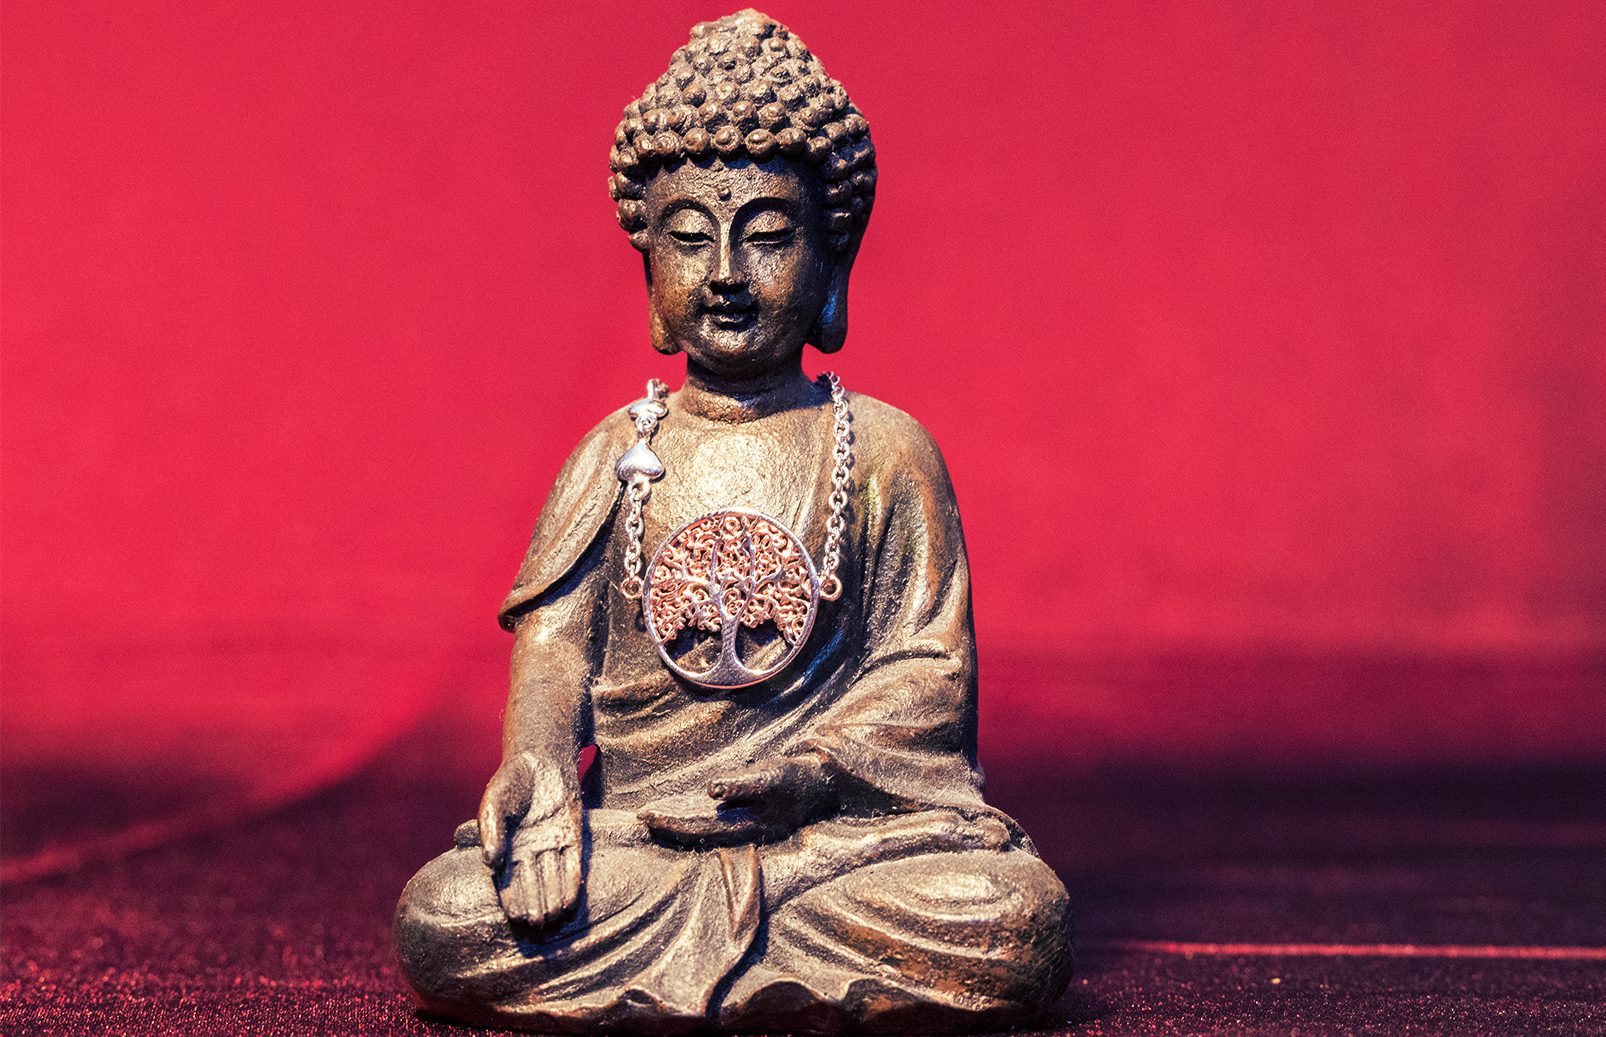 Produktfoto eines Lebensbaum-Armbands auf einer kleinen Buddha-Statue mit rotem Hintergrund